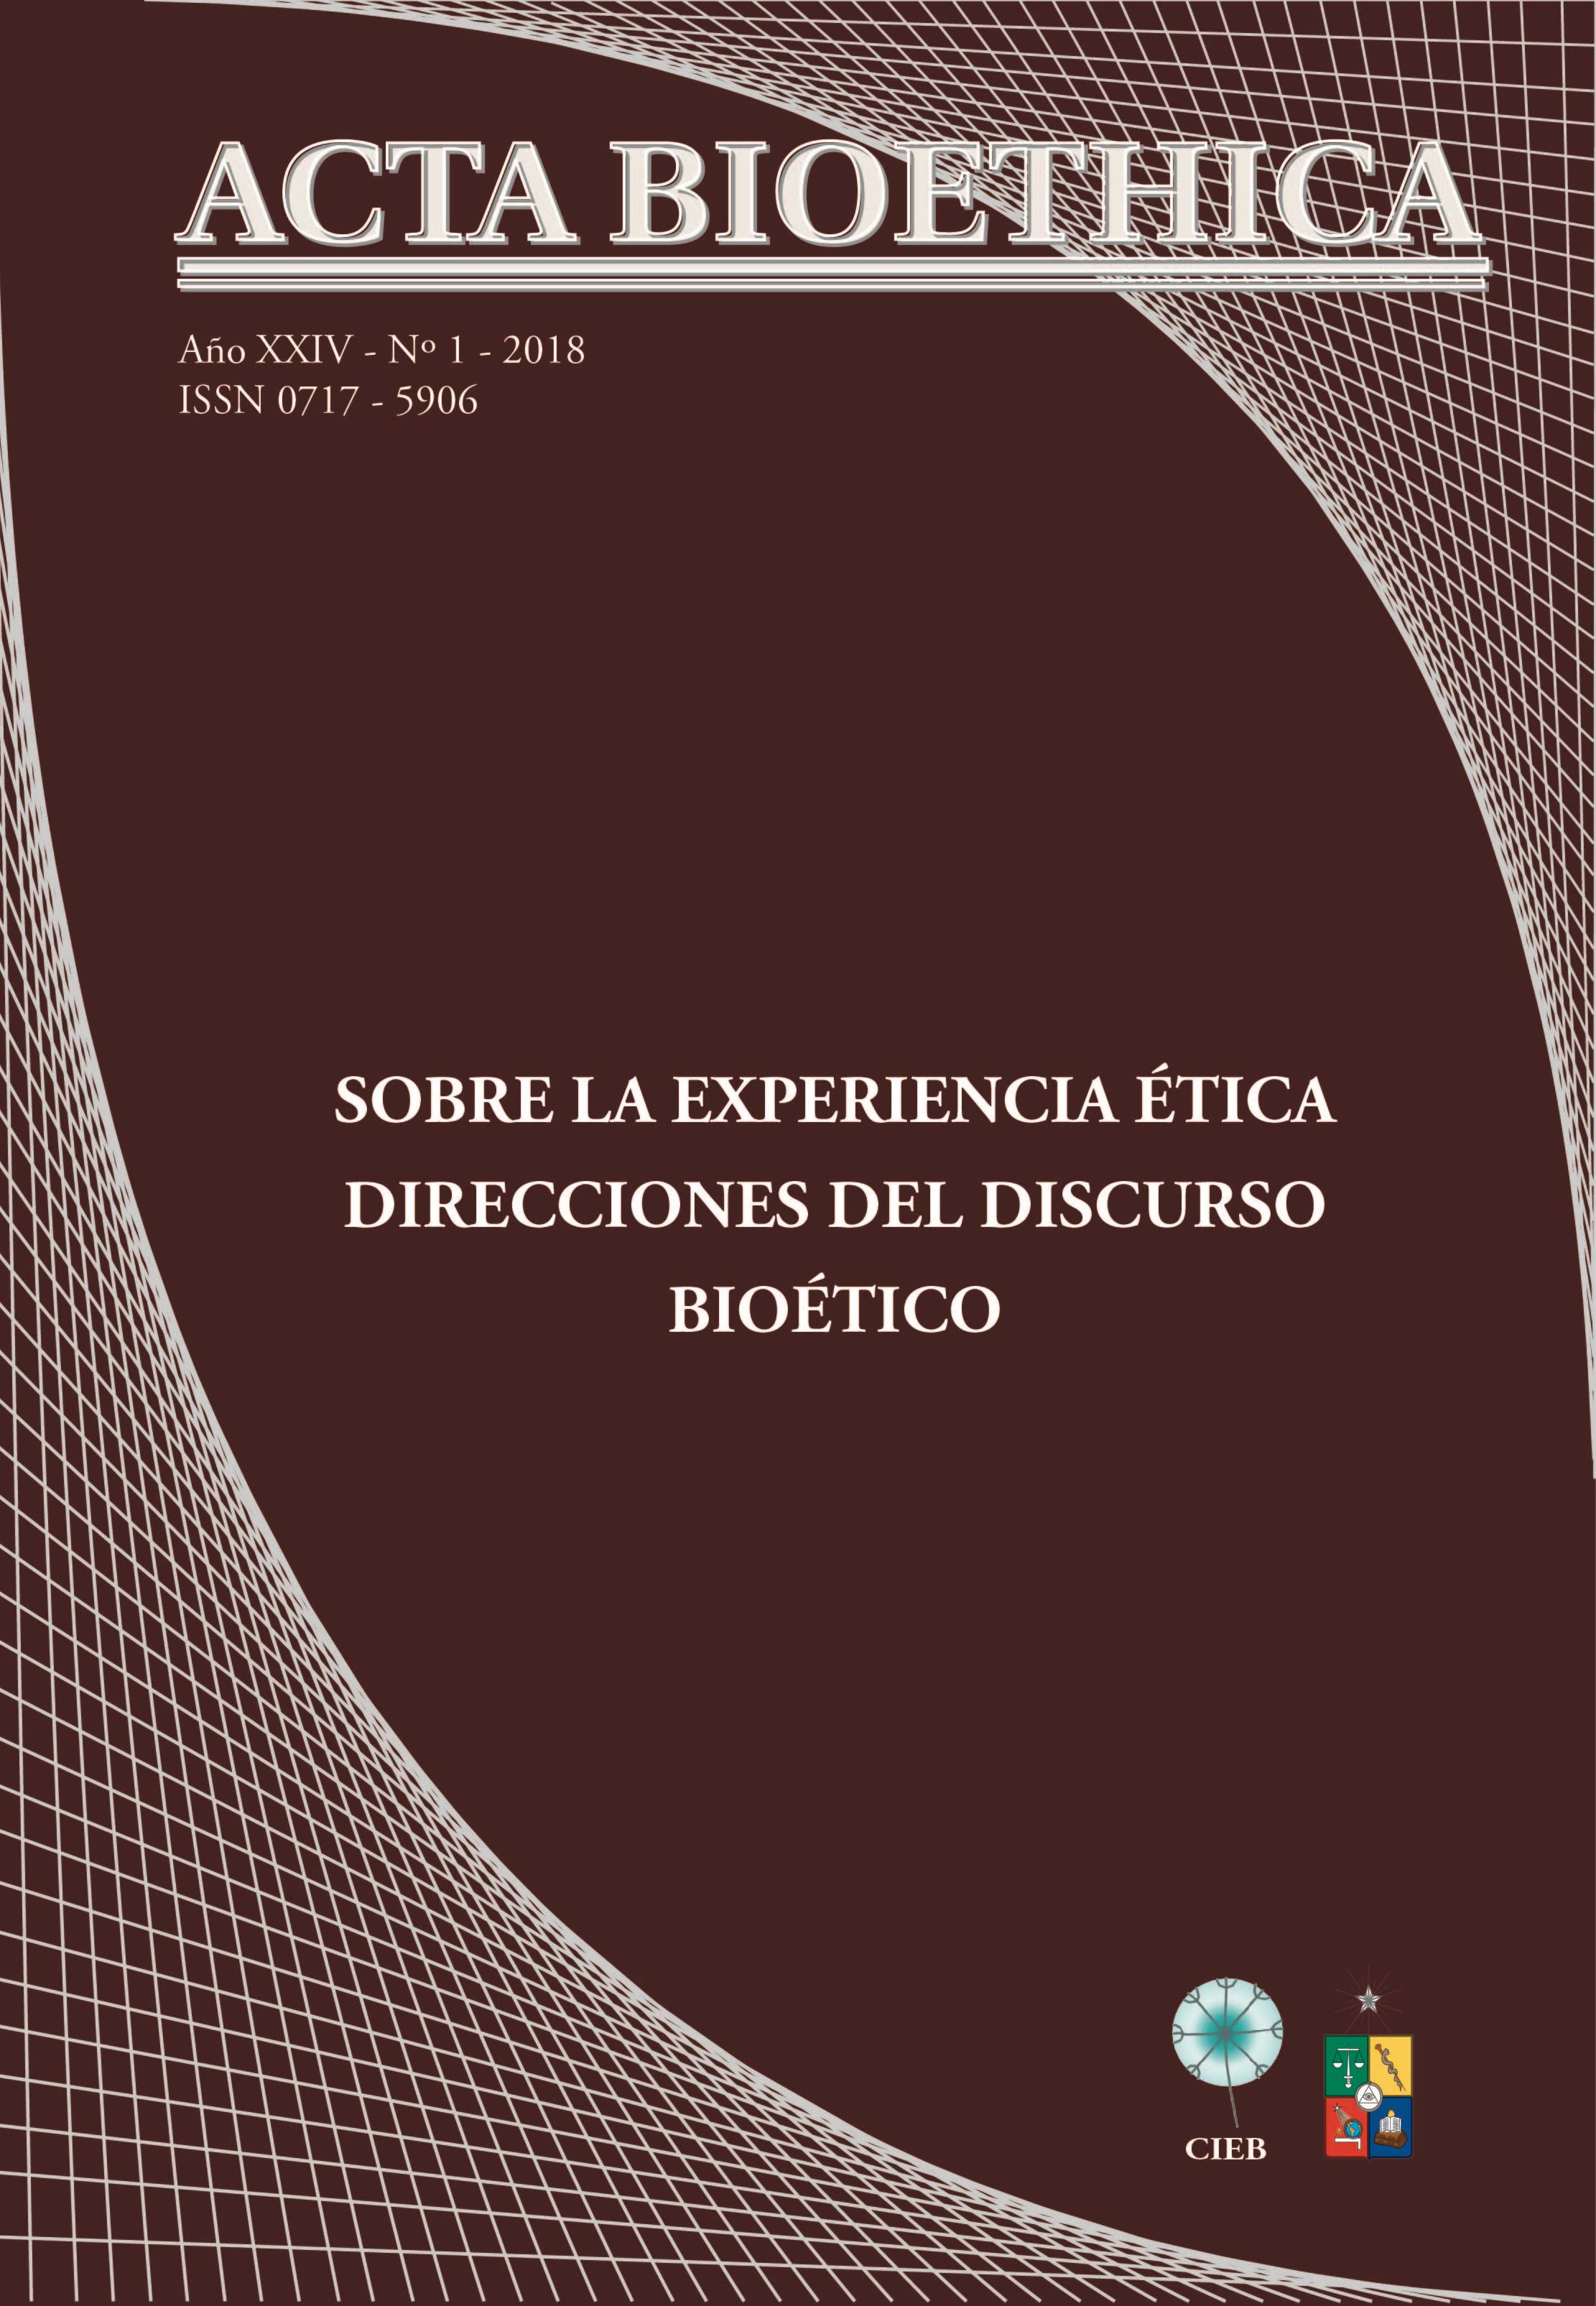 							Visualizar v. 24 n. 1 (2018): Sobre la experiencia ética. Direcciones del discurso bioético
						